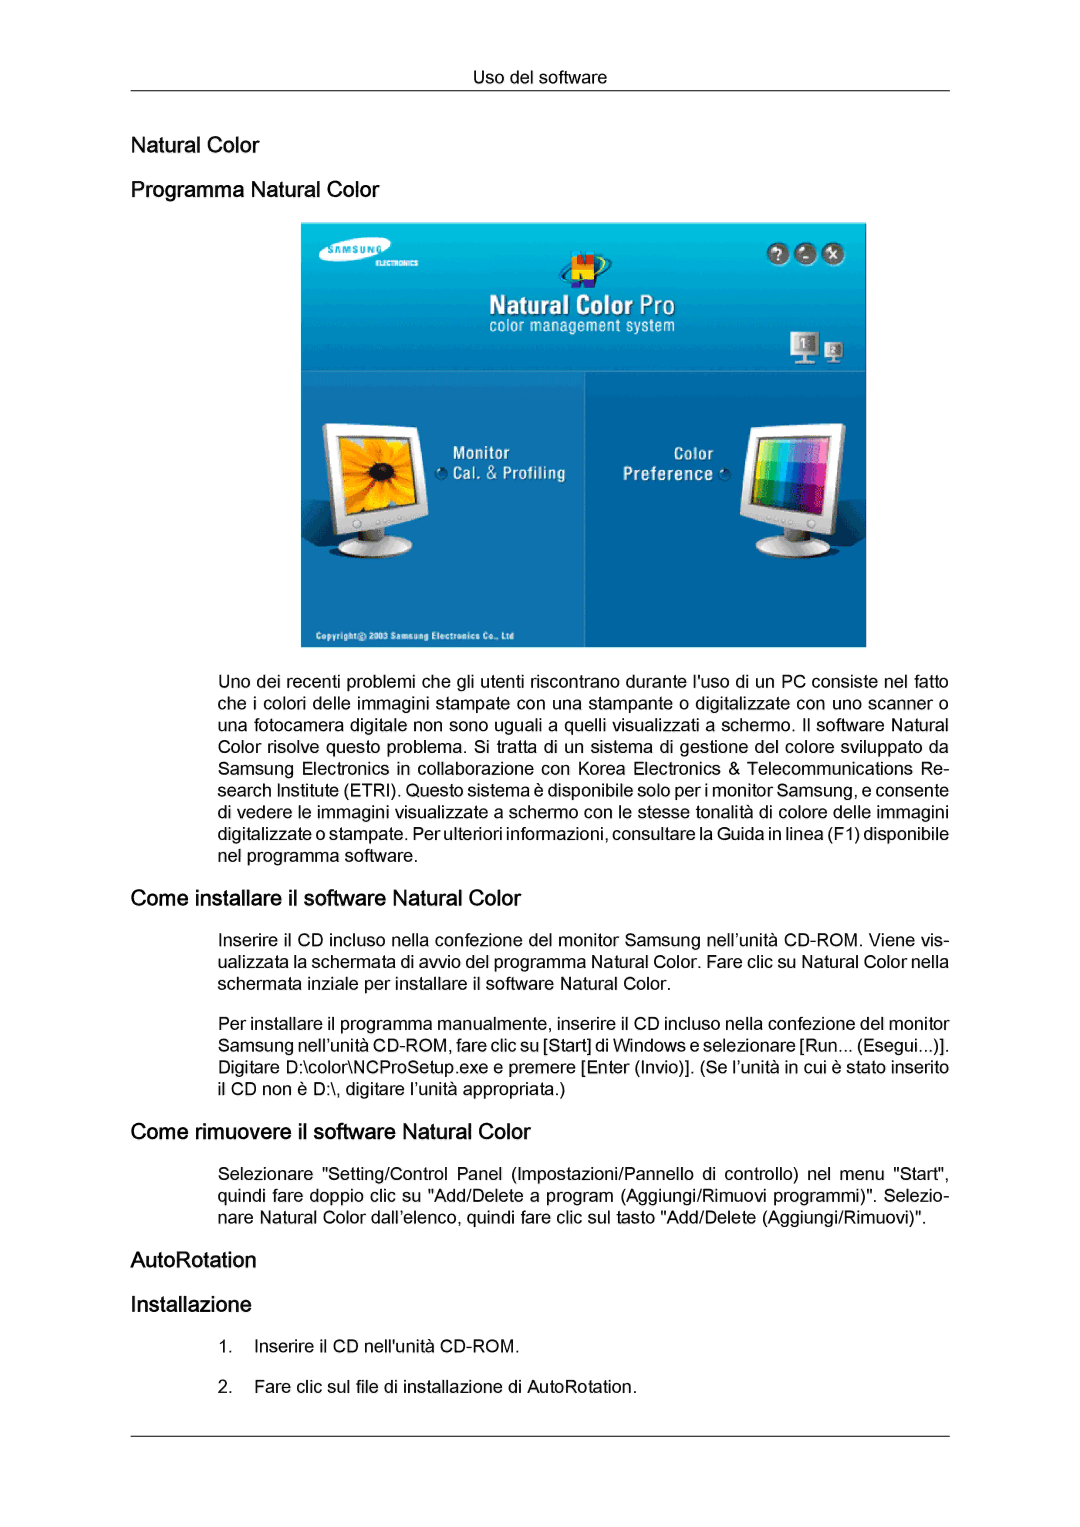 Samsung LS24KIQRFV/EDC, LS24KIVKBQ/EDC Natural Color Programma Natural Color, Come installare il software Natural Color 